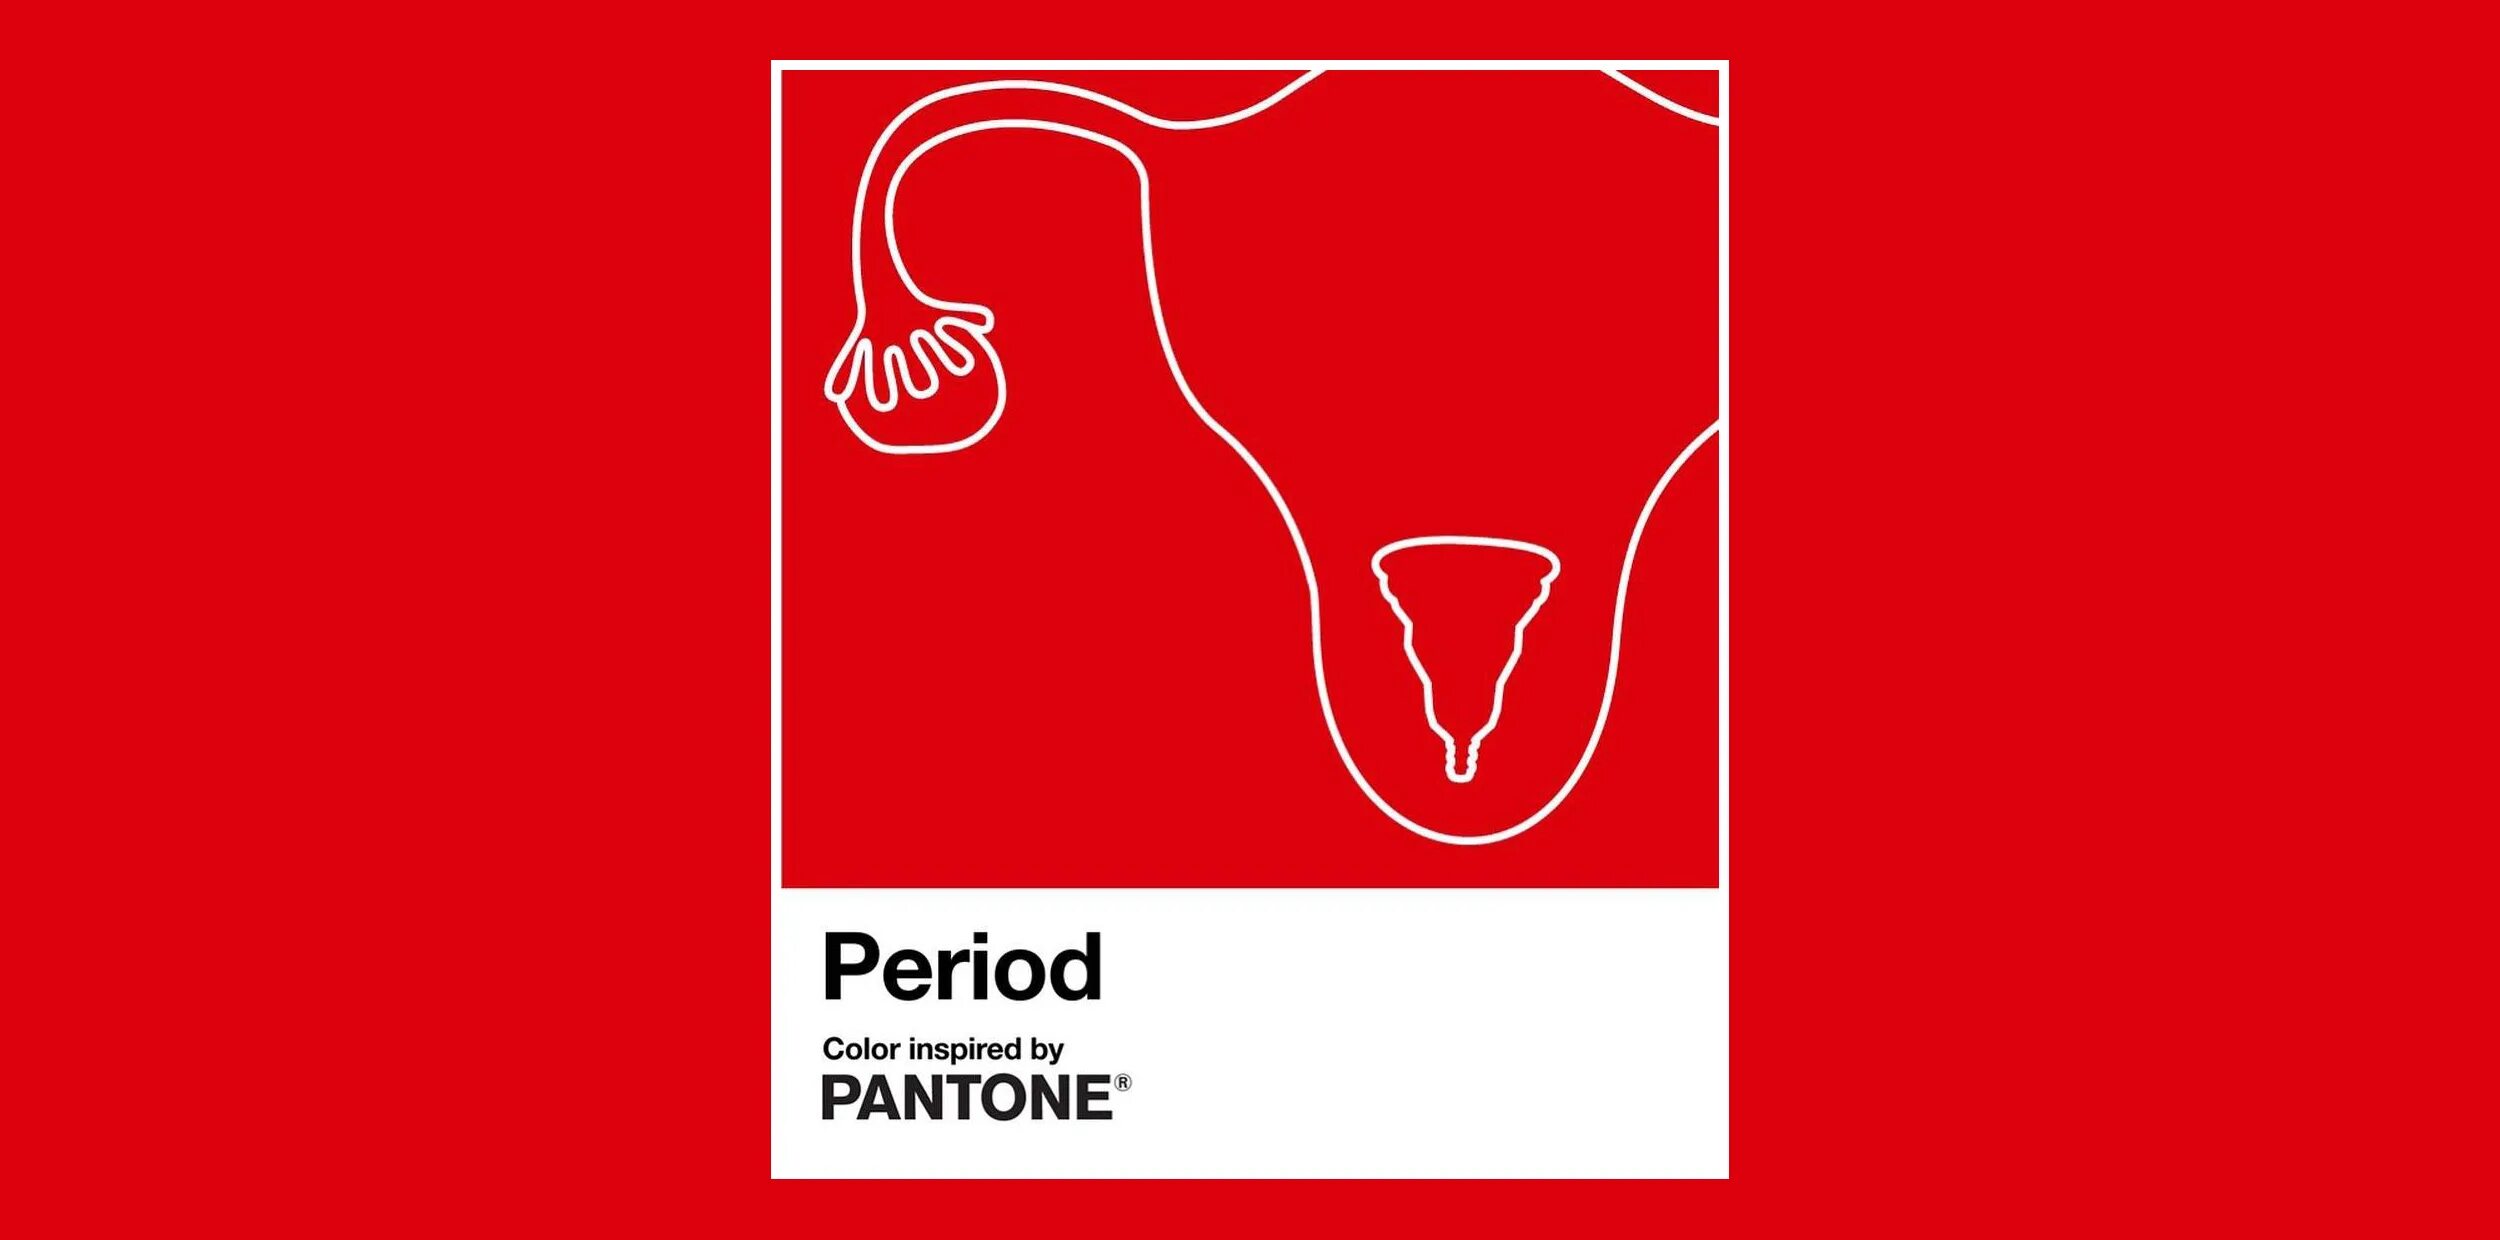 Period show. Цвет месячных пантон. Пантон цвет period. Pantone цвет месячных. Цвет менструации пантон.